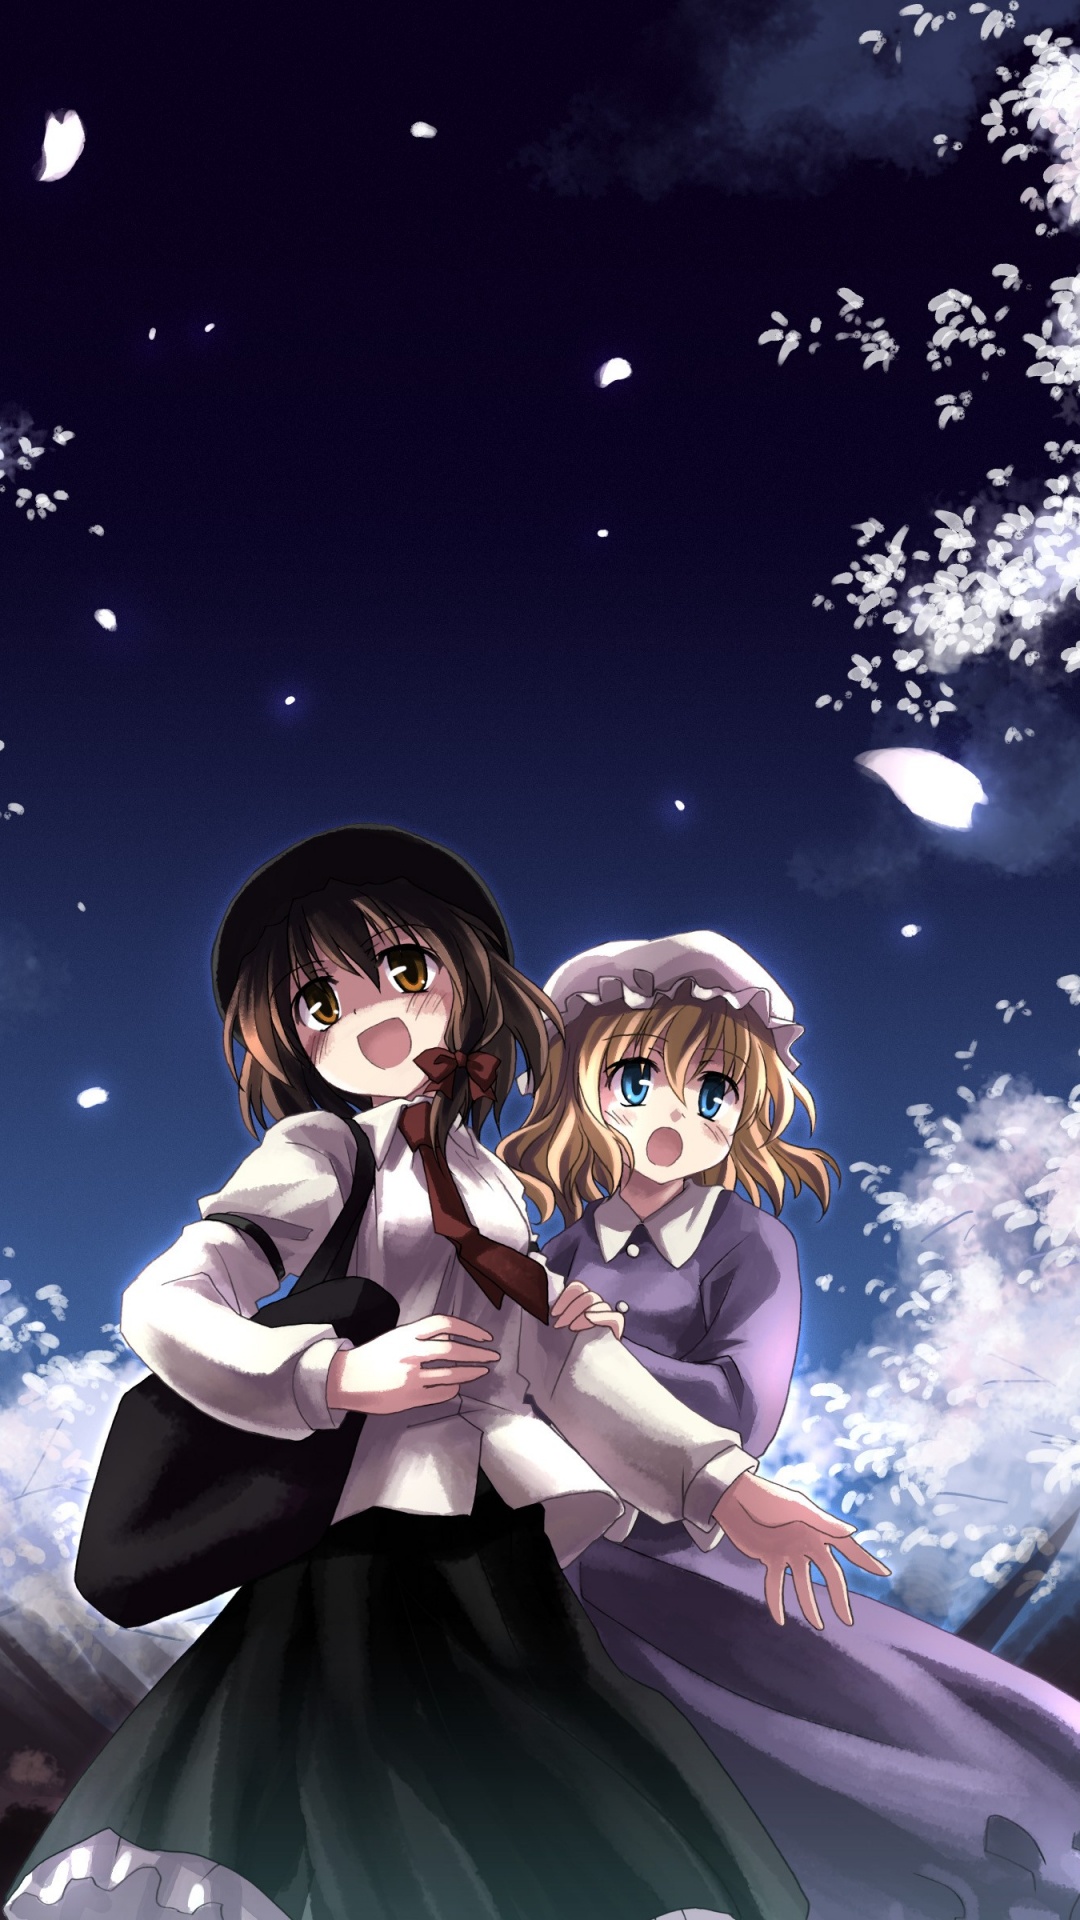 Mädchen im Weißen Kleid Anime-Charakter. Wallpaper in 1080x1920 Resolution